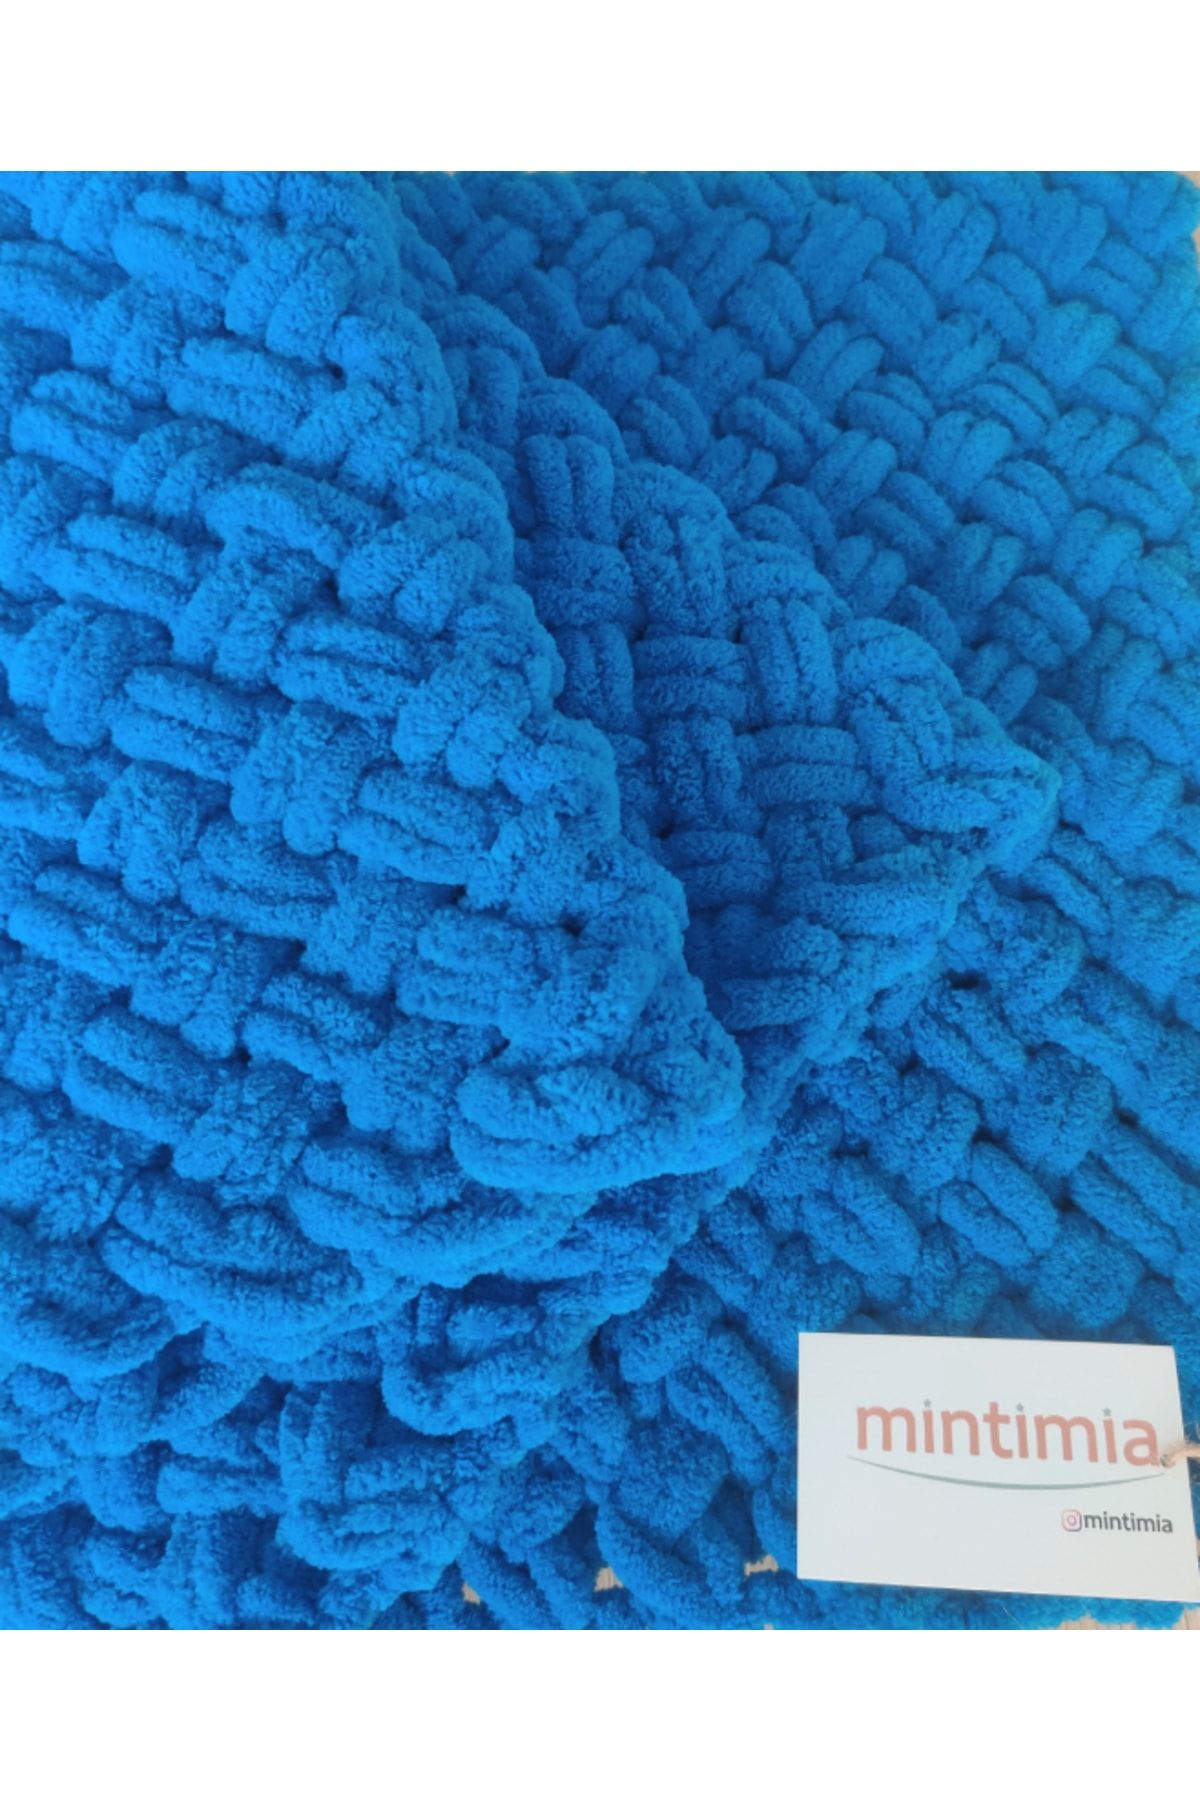 Mintimia Bebek Battaniyesi Kışlık-kalın Havacı Mavi 85*85 Cm